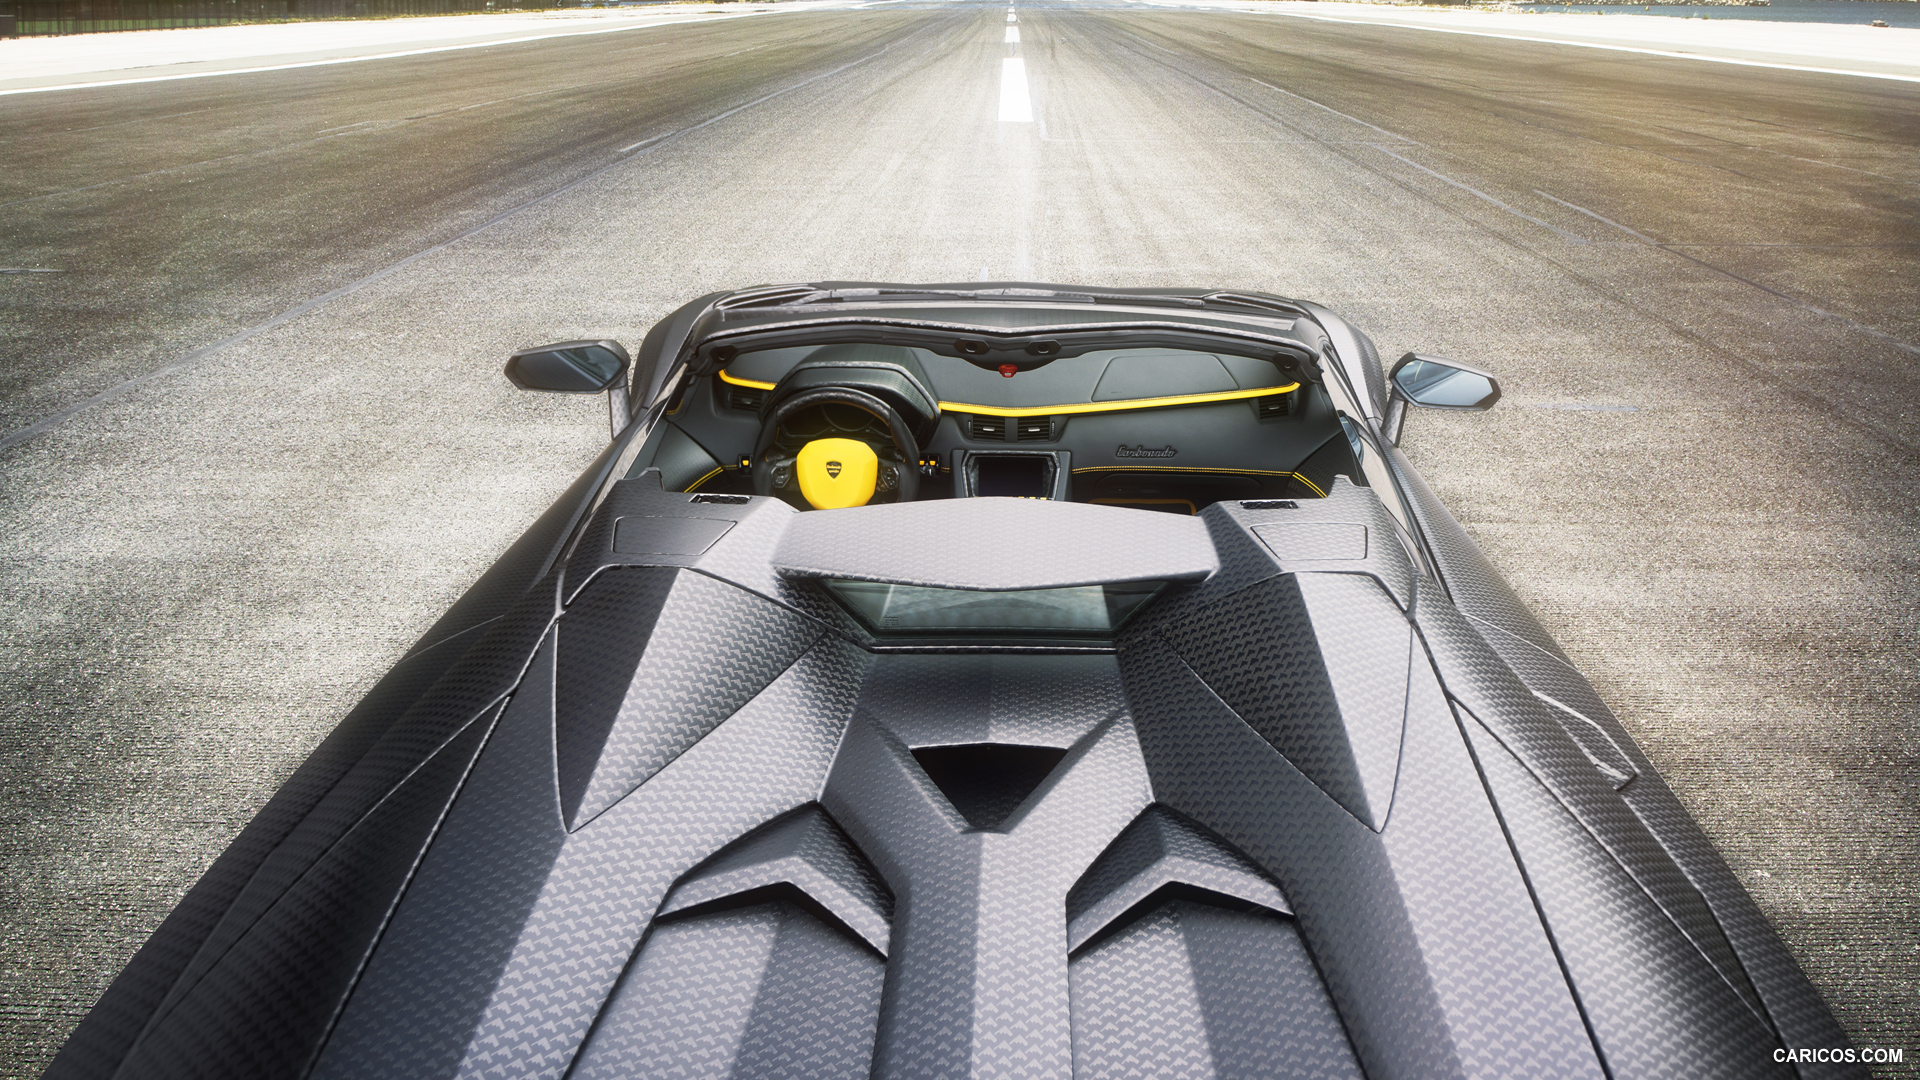 2014 Mansory Carbonado Apertos based on Lamborghini Aventador Roadster  - Top, #3 of 8